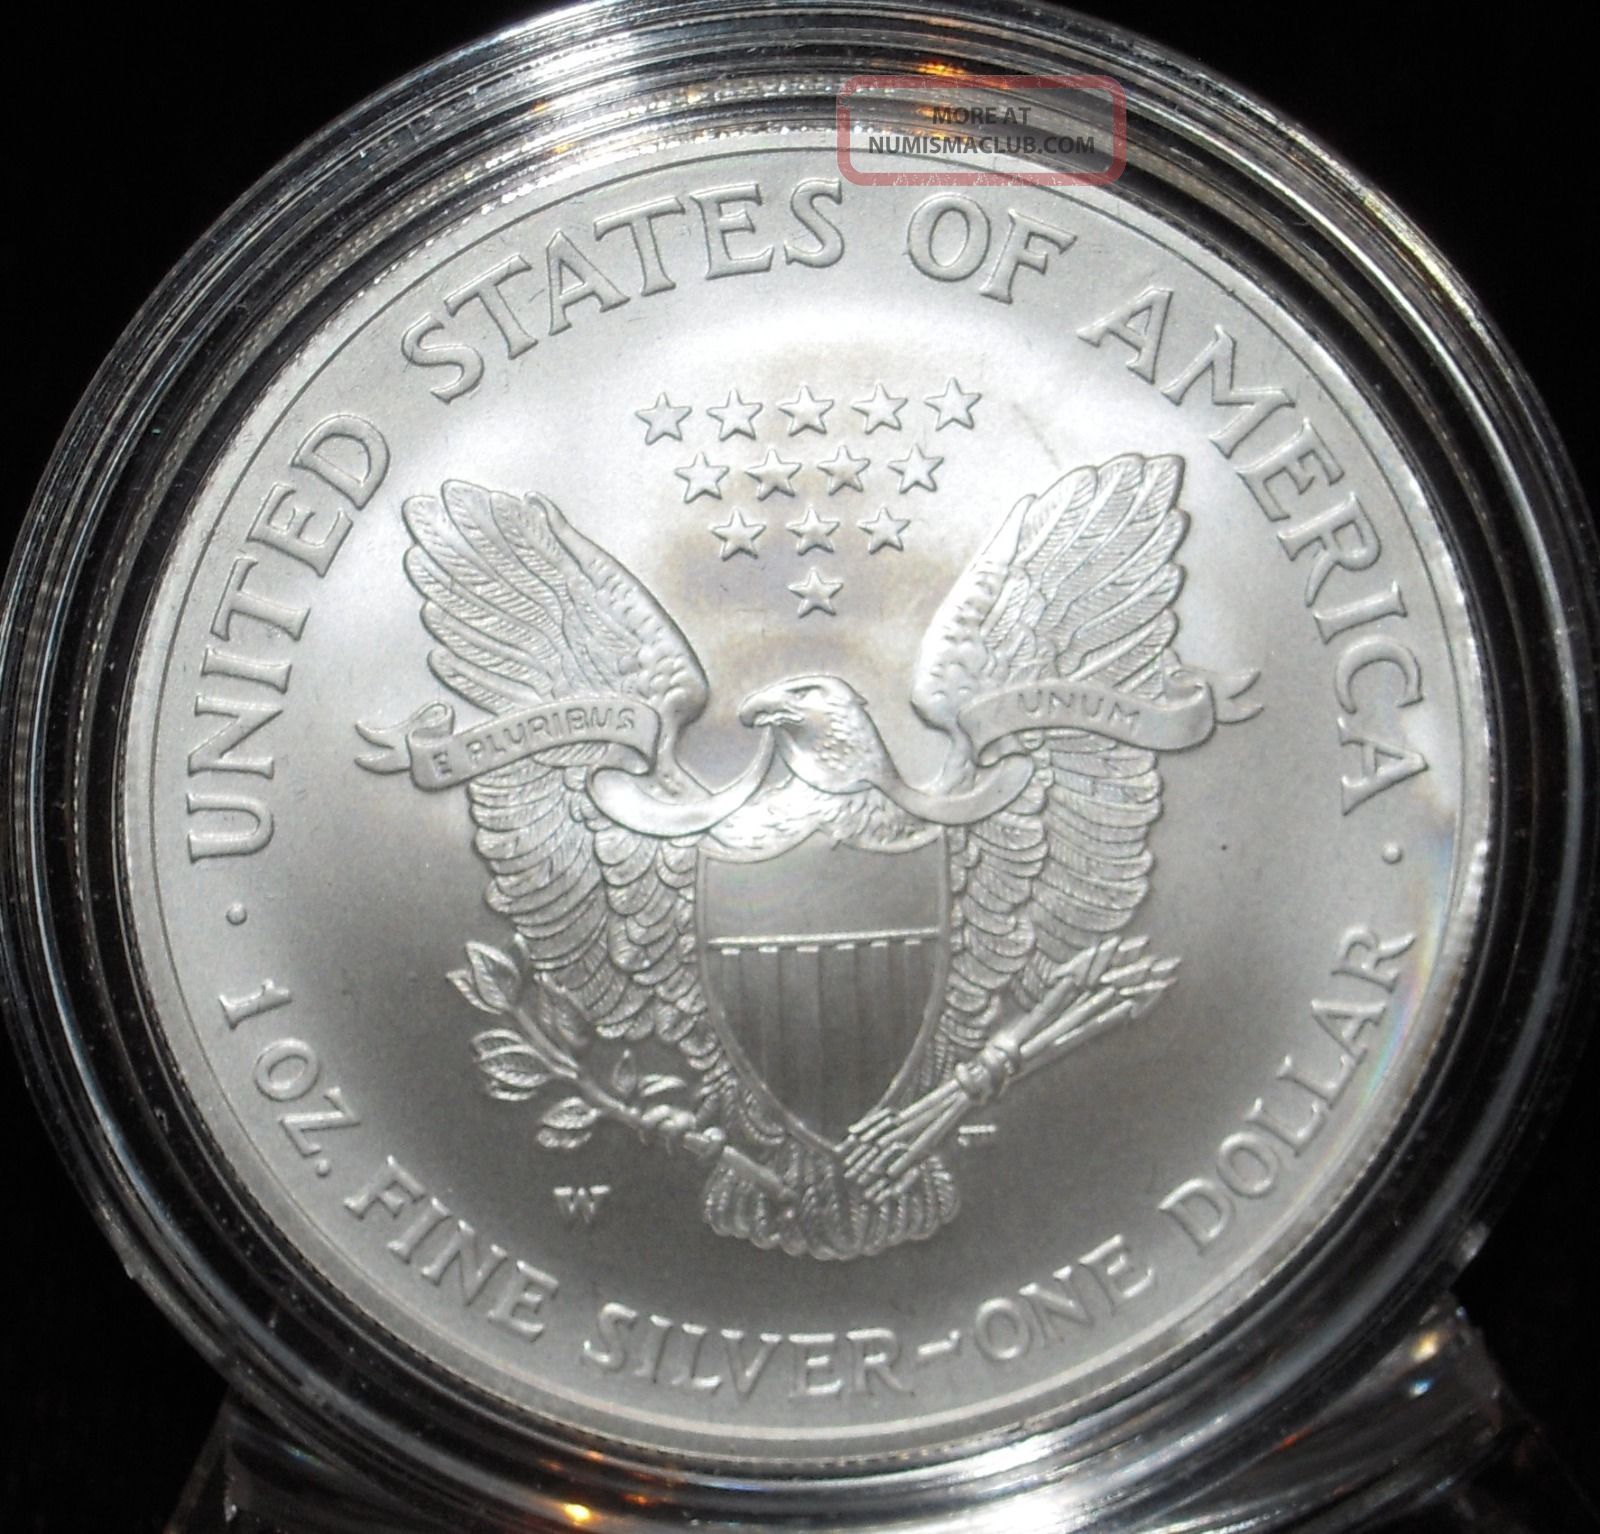 american eagle one ounce silver bullion coin